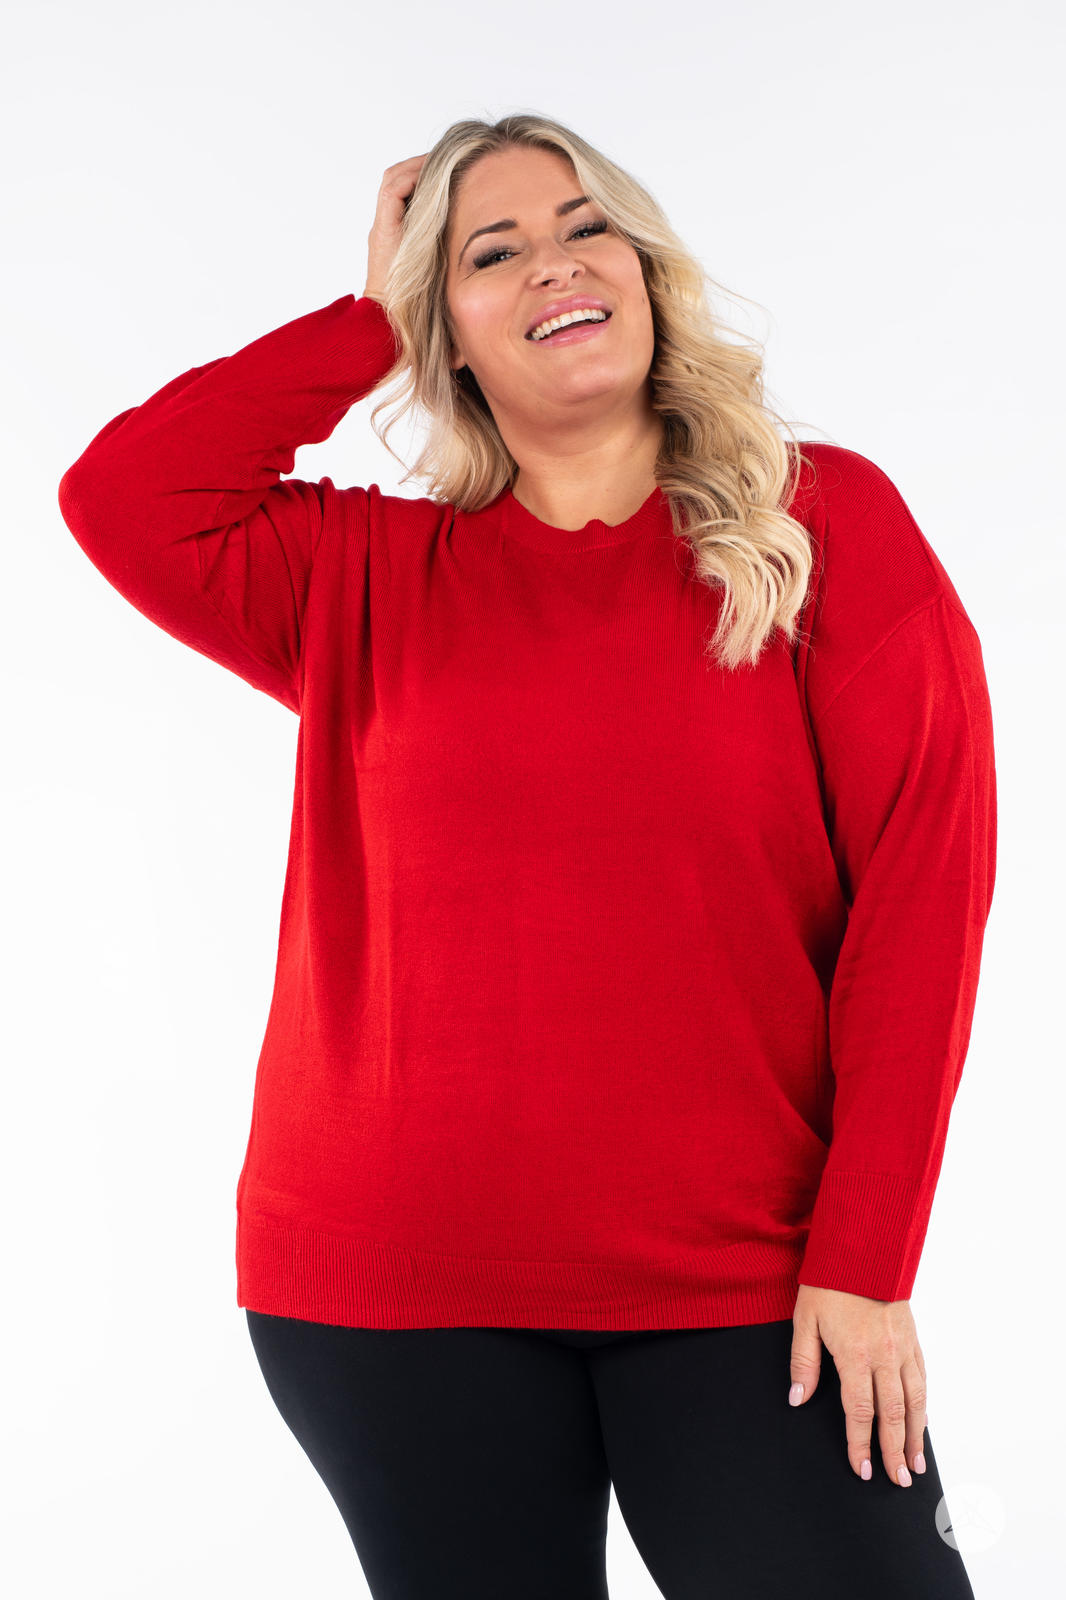 Lands End Serious Sweats Women's Red 3/4 Sleeve Jumper Sweatshirt Size  Medium